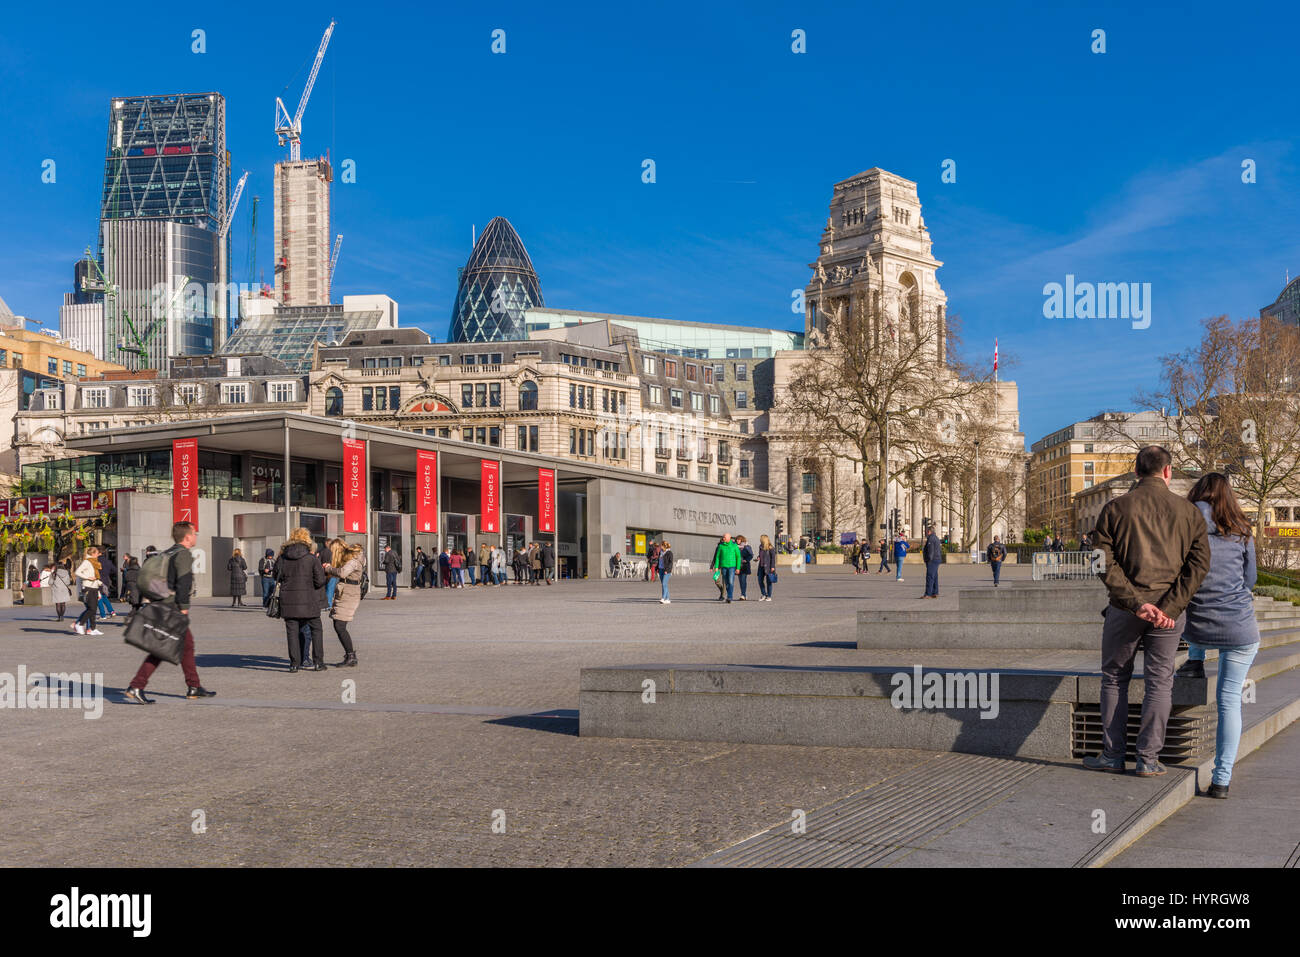 Les visiteurs de partout dans le monde file d'attente à la billetterie située en face de la Tour de Londres dans le centre de la capitale. Banque D'Images